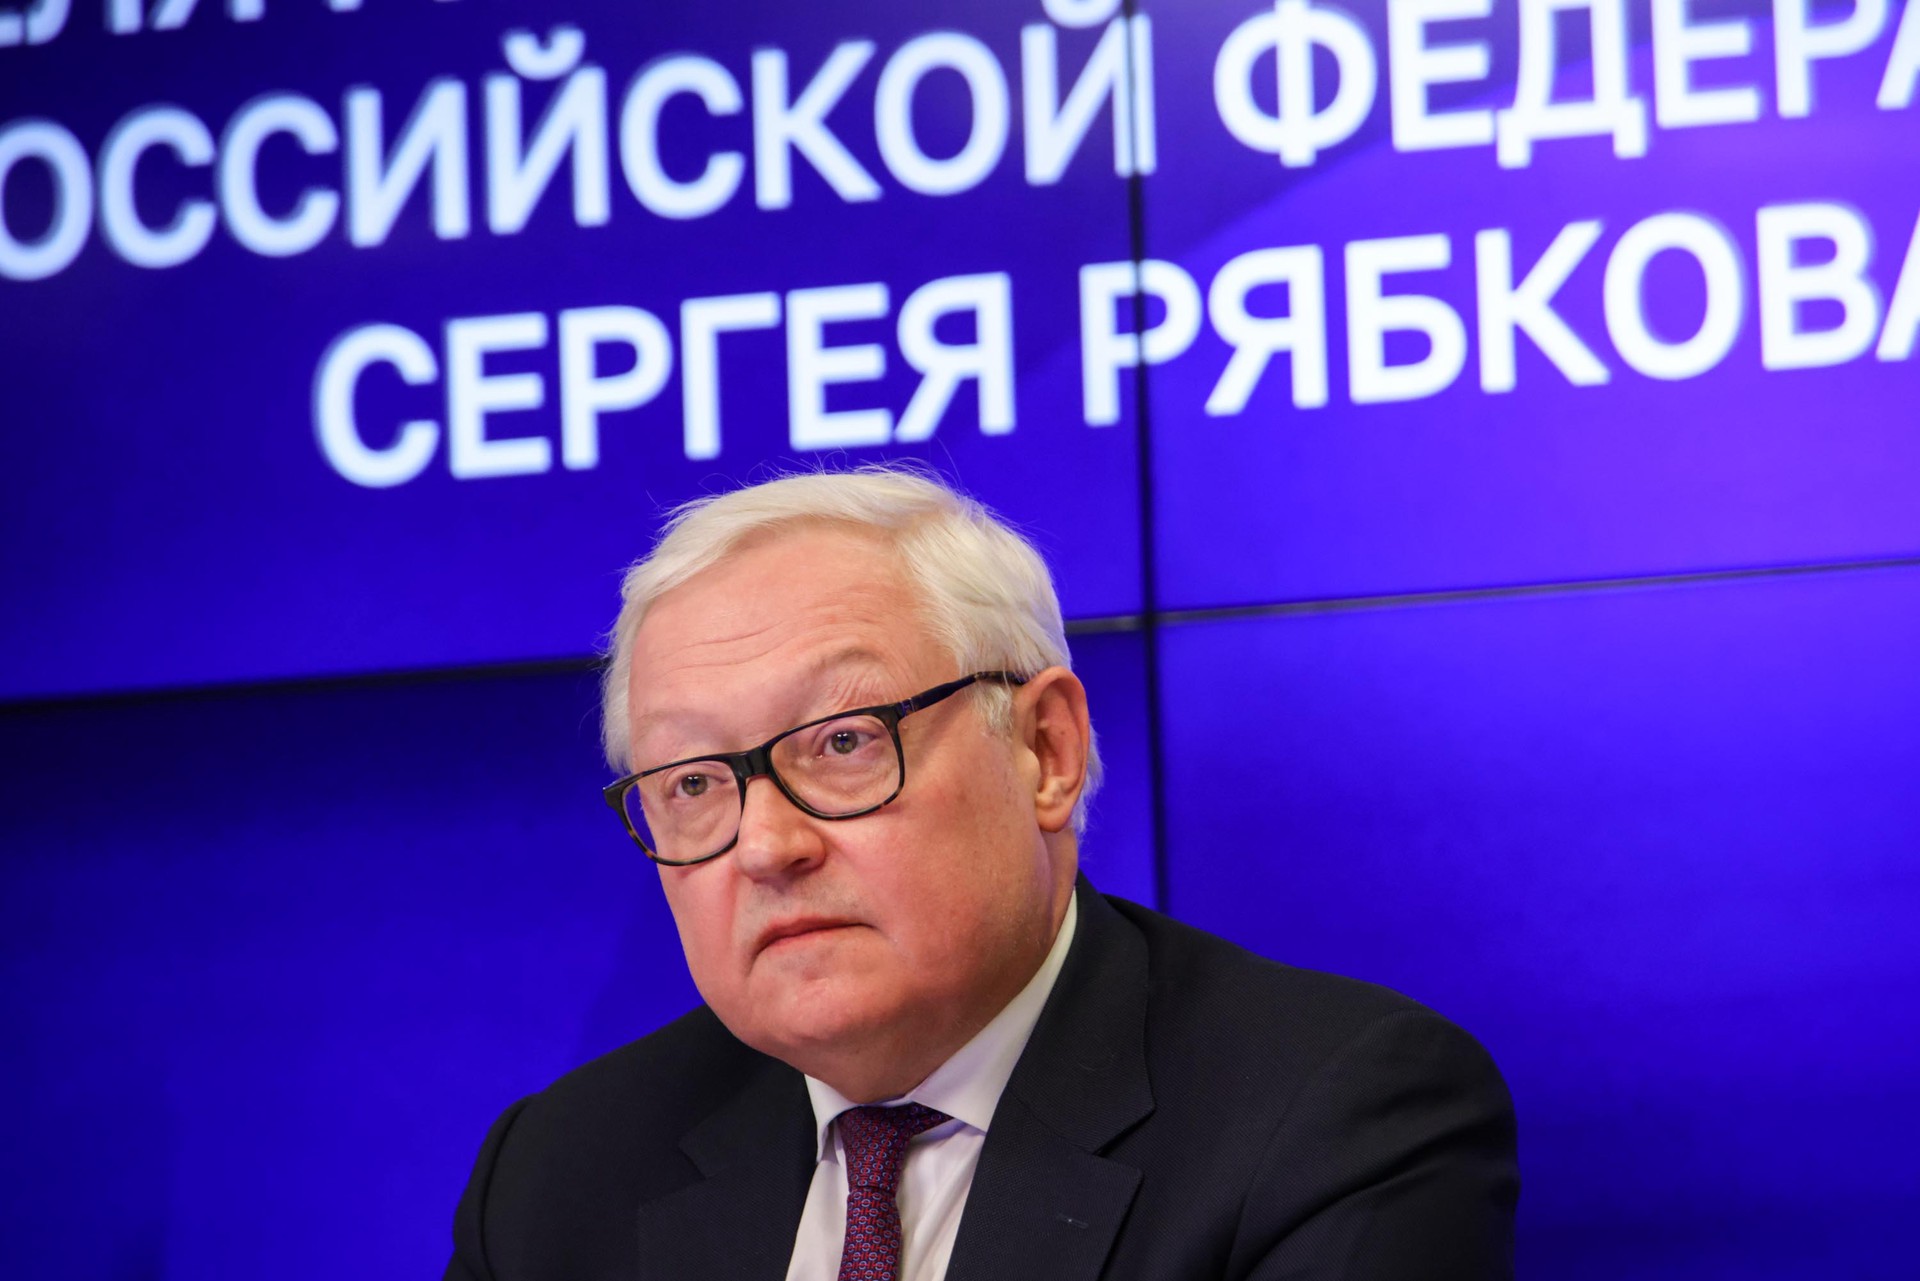 Рябков: Решение России о приостановке ДСНВ незыблемо независимо от любых контрмер США